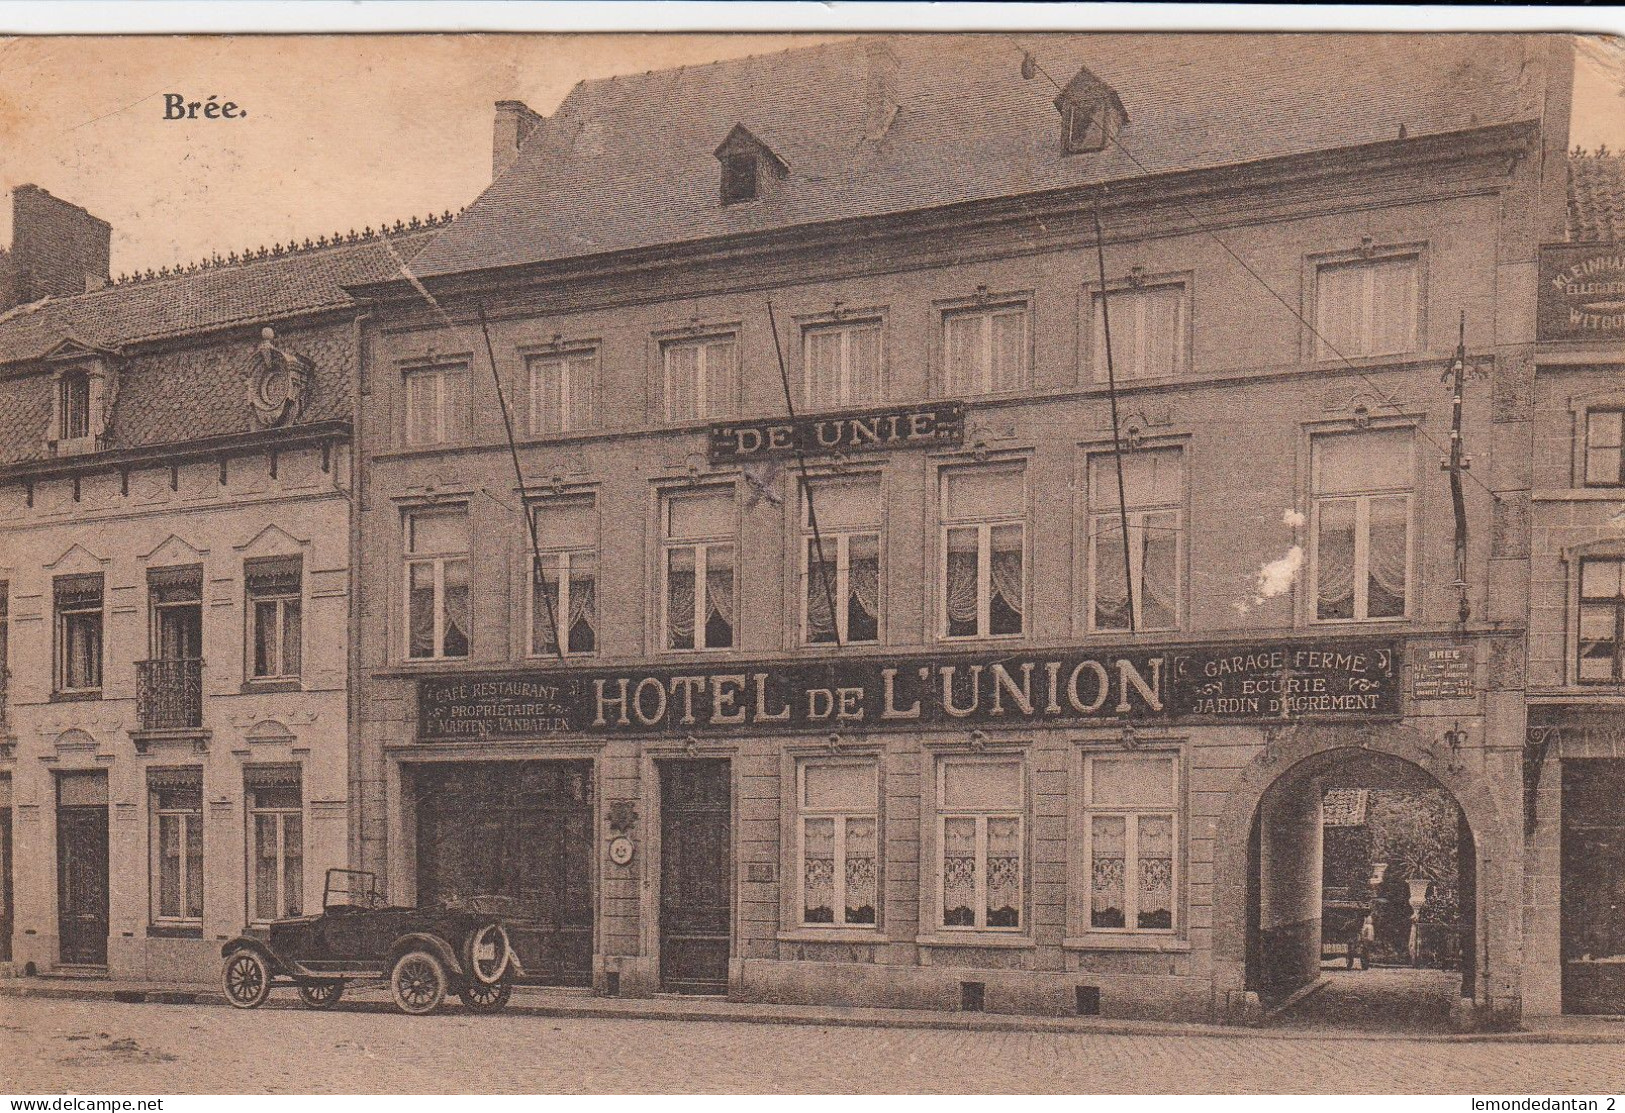 Bree - Hotel De L'Union - De Unie - Bree